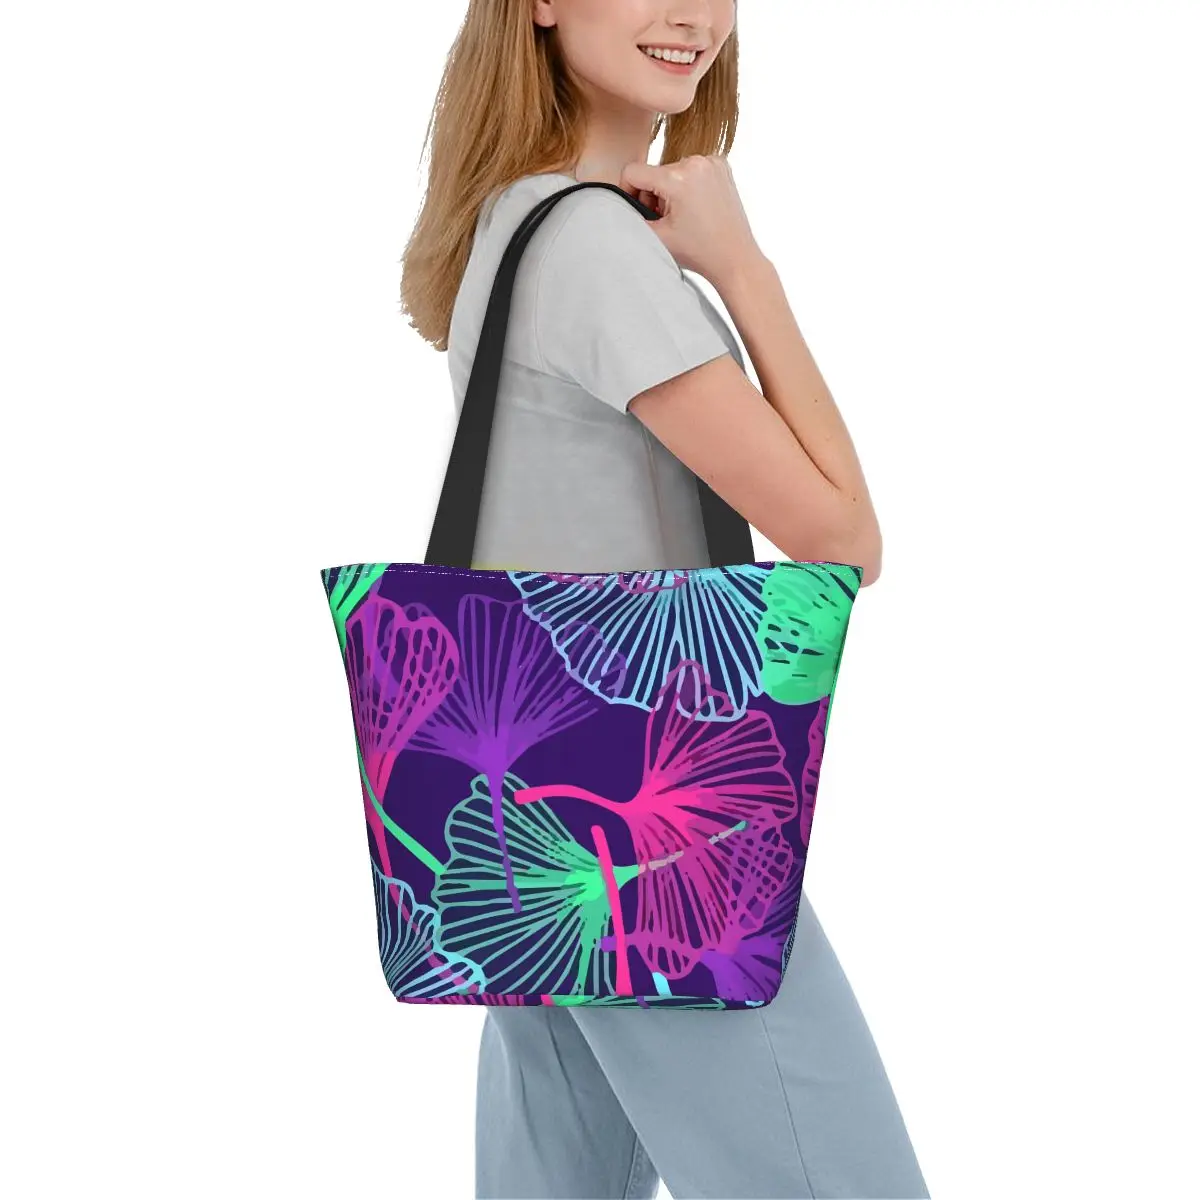 

Красочная сумка-шоппер Ginkgo Biloba, сумки с тропическими листьями, женская сумка-тоут с графическим дизайном, забавная дорожная сумка через плечо из полиэстера